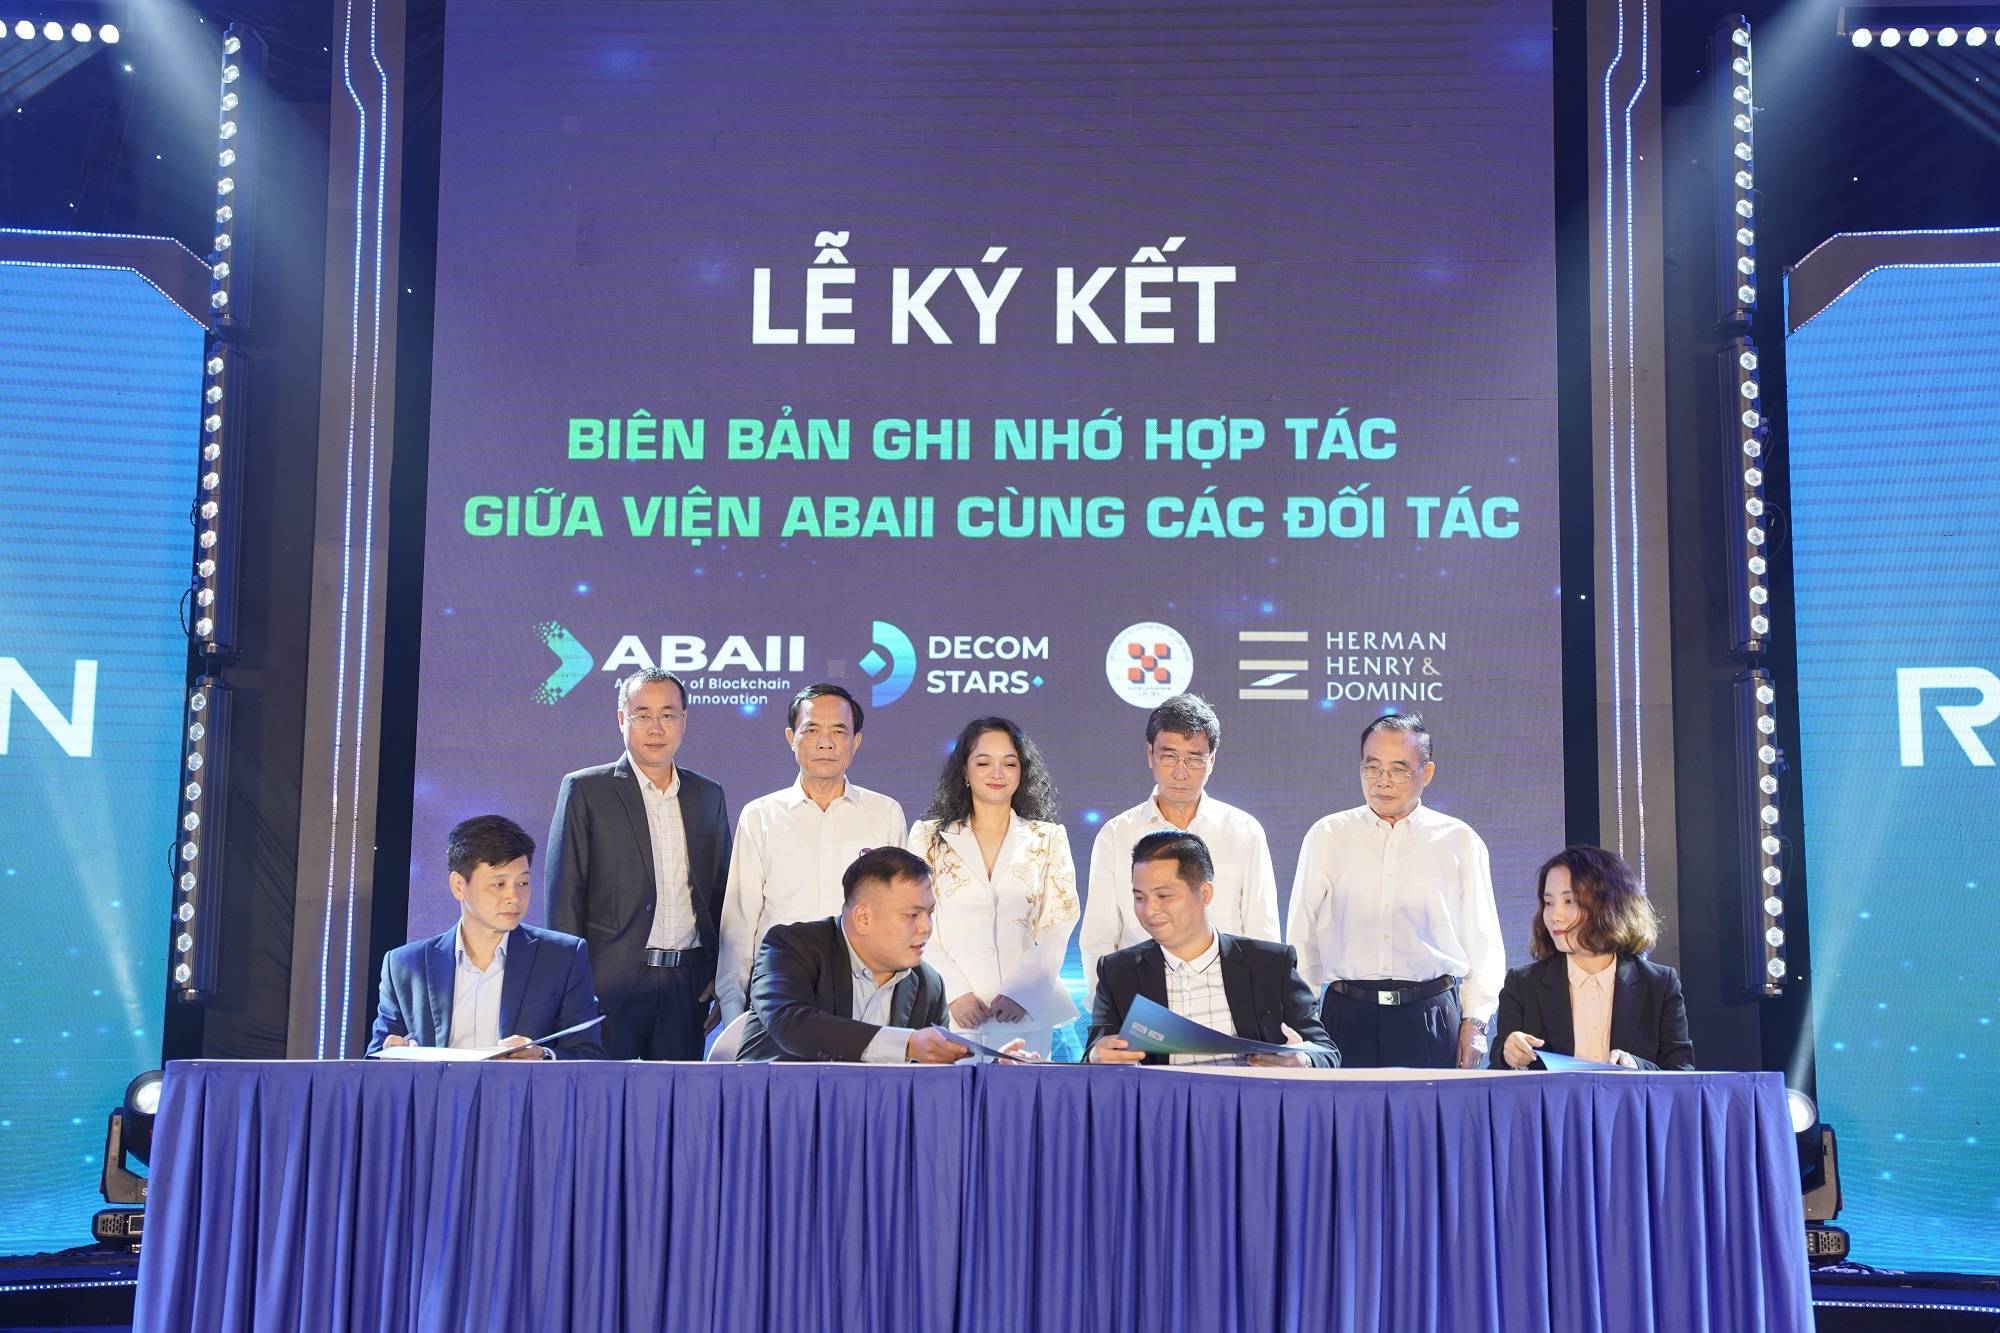 Hiệp Hội Blockchain Việt Nam Hướng Đến Mục Tiêu Đào Tạo Blockchain Và Ai Cho 1 Triệu Người Việt